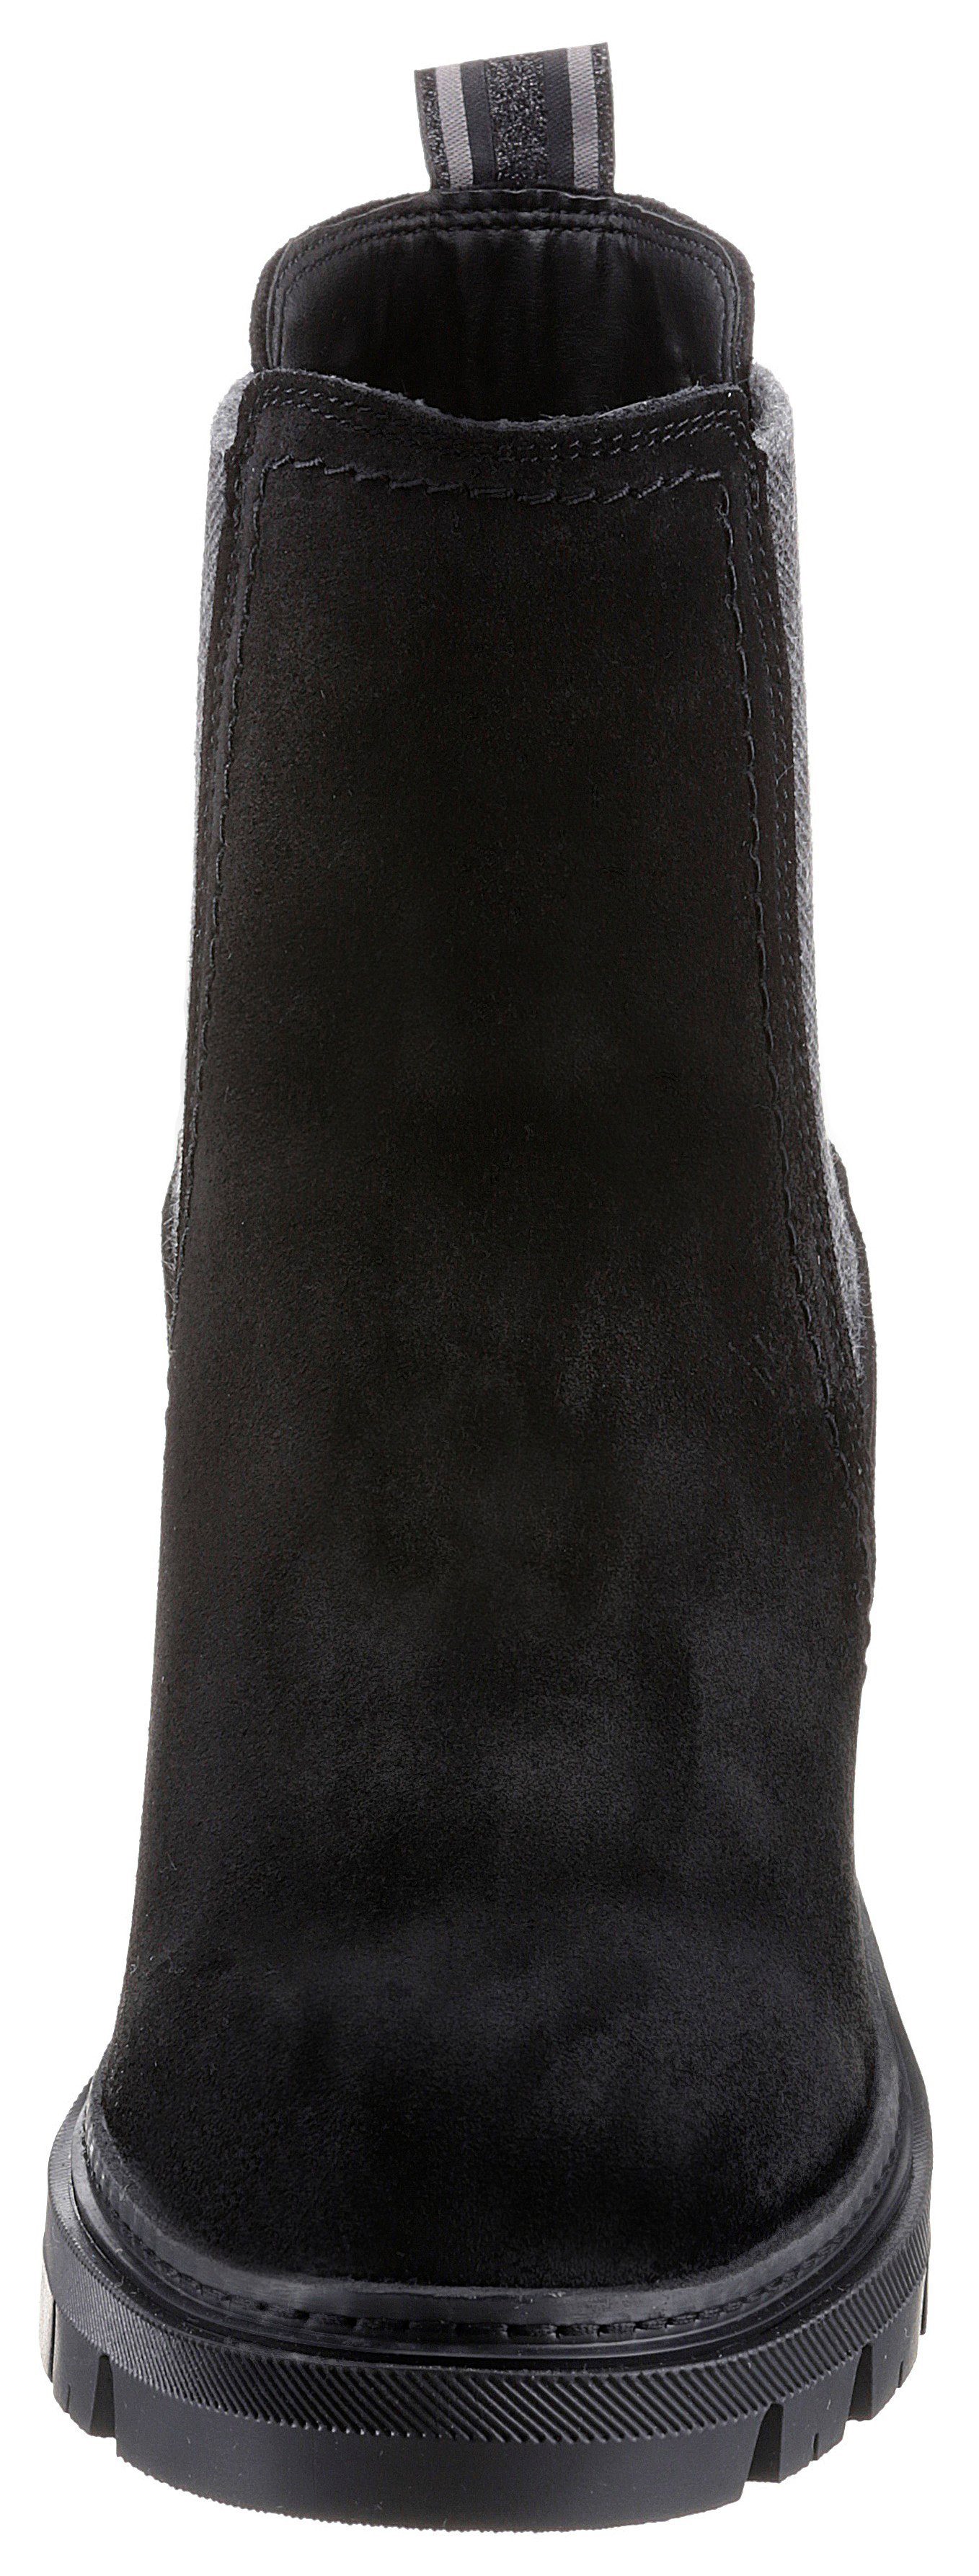 Tamaris Panna Stiefelette mit trendigen Streifenbesatz schwarz